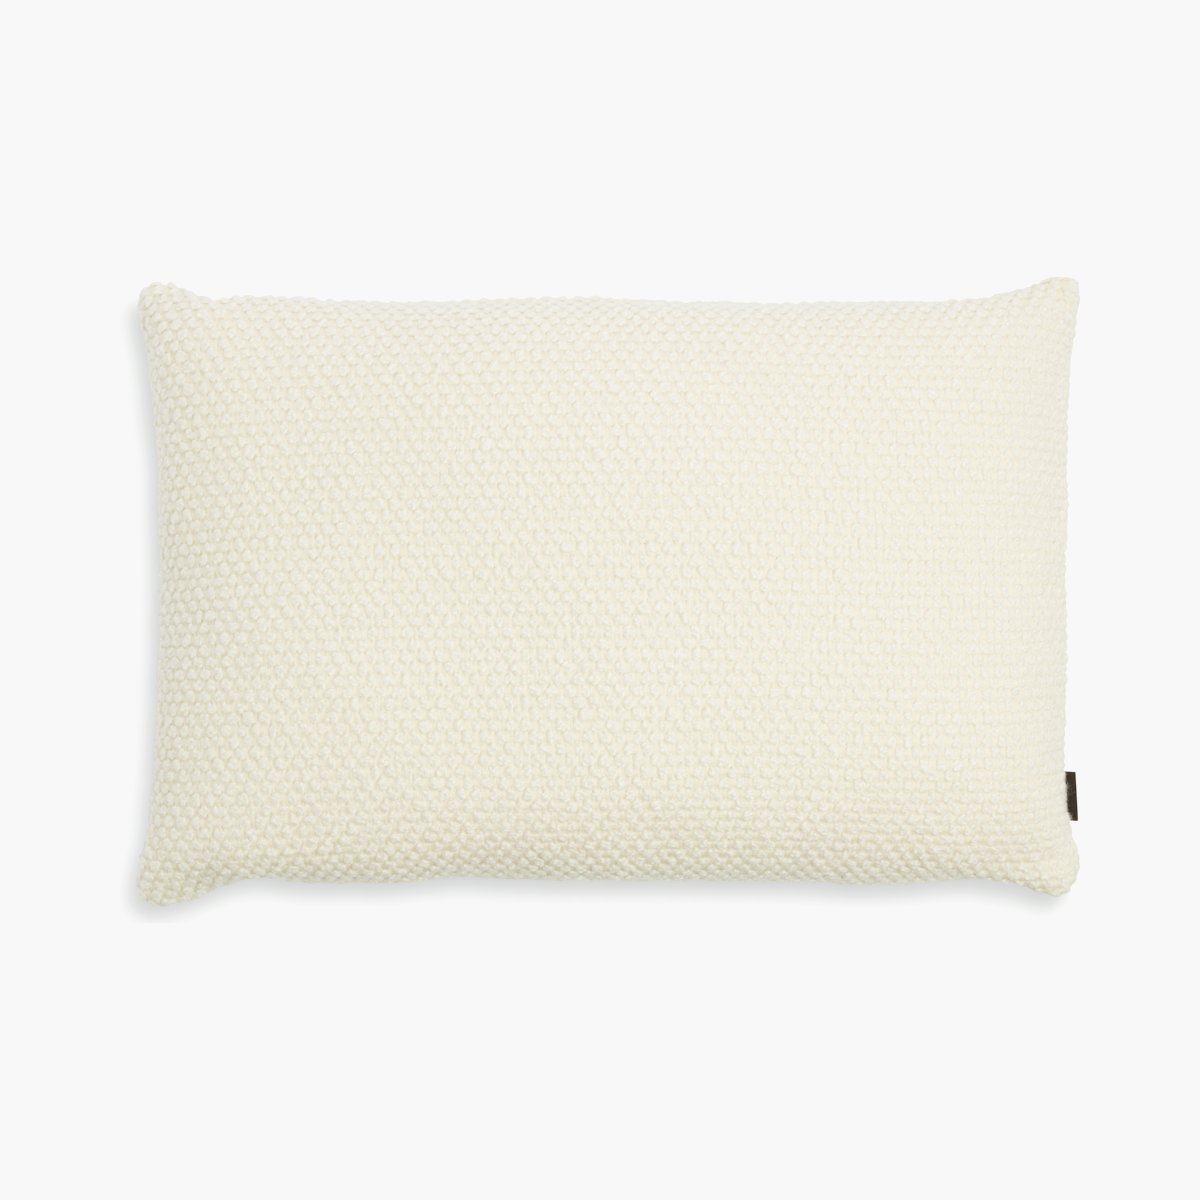 Huddle Rectangular Throw Pillow